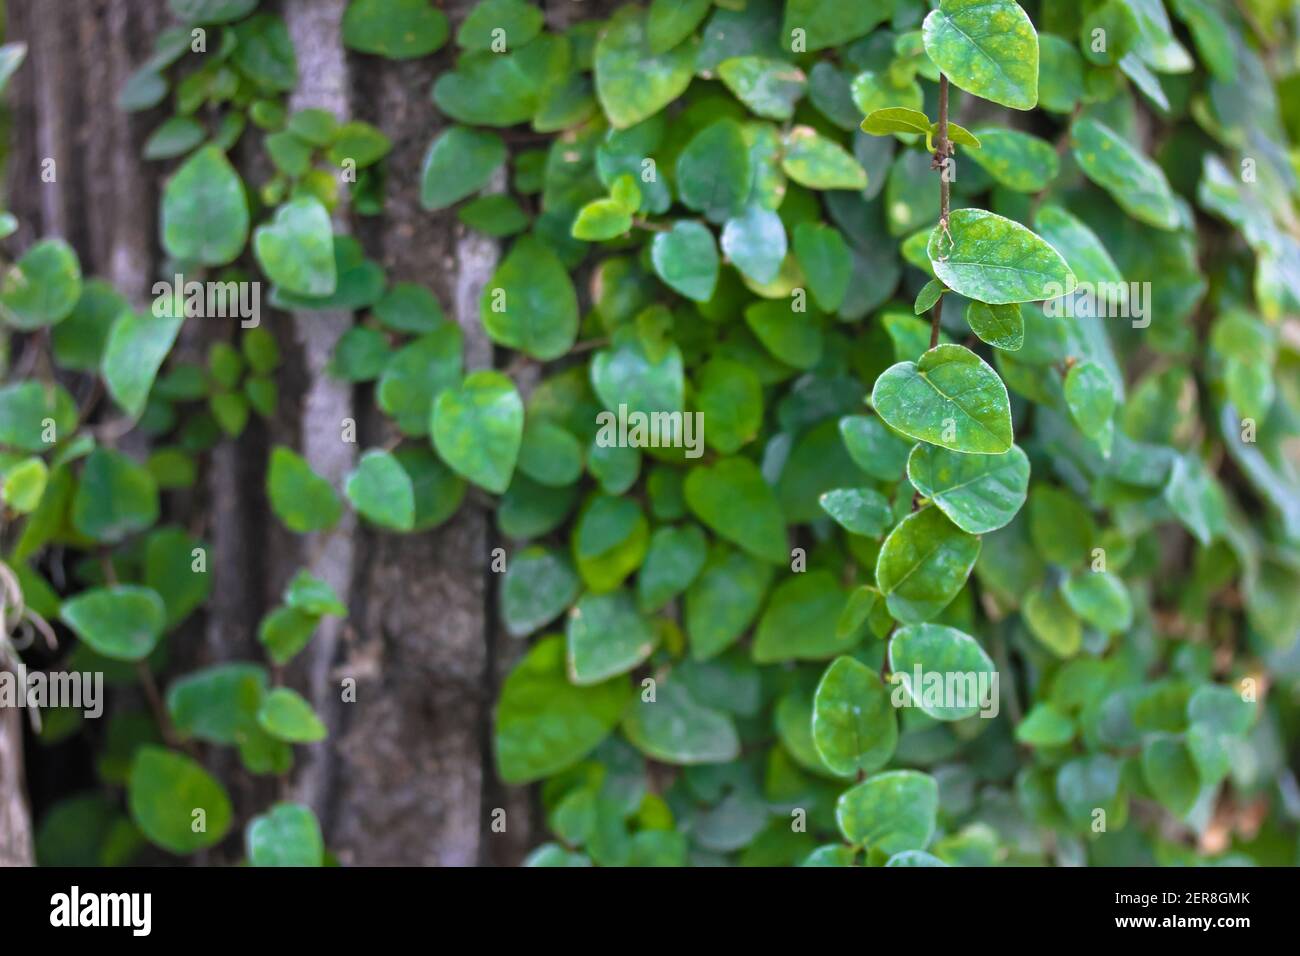 Persan vert ou lierre de Colchis. Une plante grimpante à feuilles persistantes qui monte sur le mur. Laisse la texture. Mur vert. Texture végétale verte. Feuilles vertes Backgrou Banque D'Images